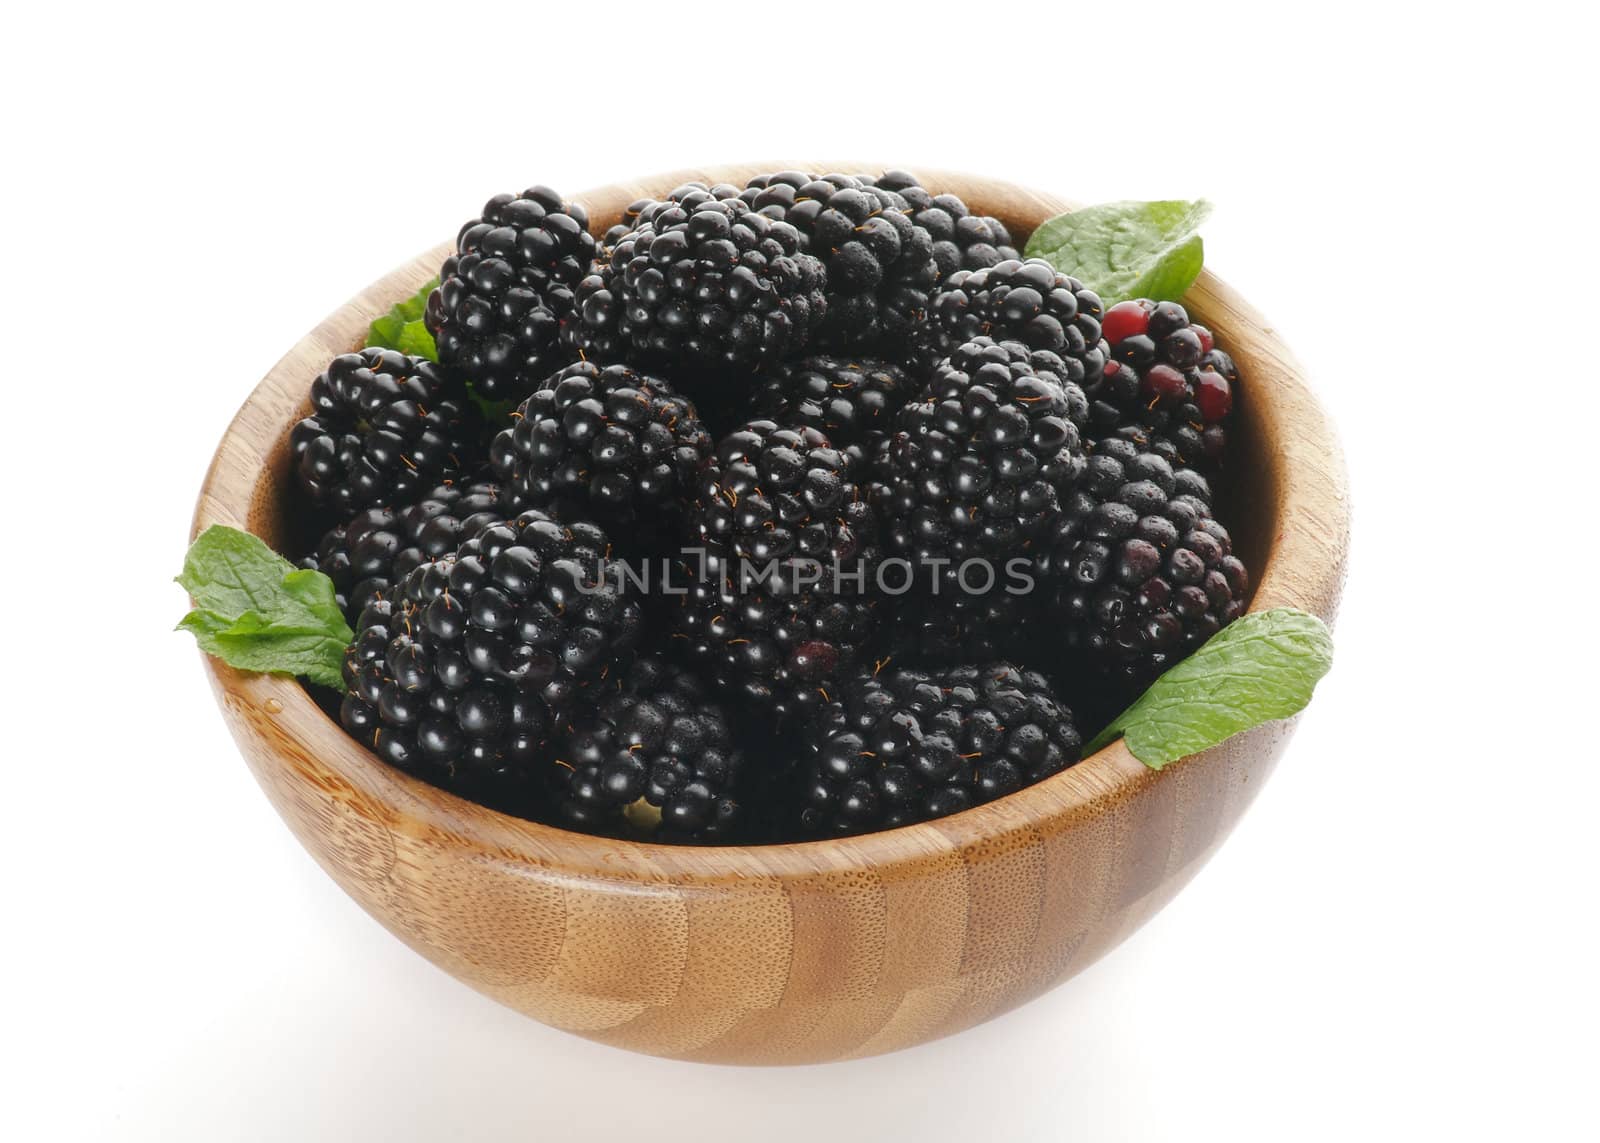 Ripe Blackberries in Wooden Bowl by zhekos